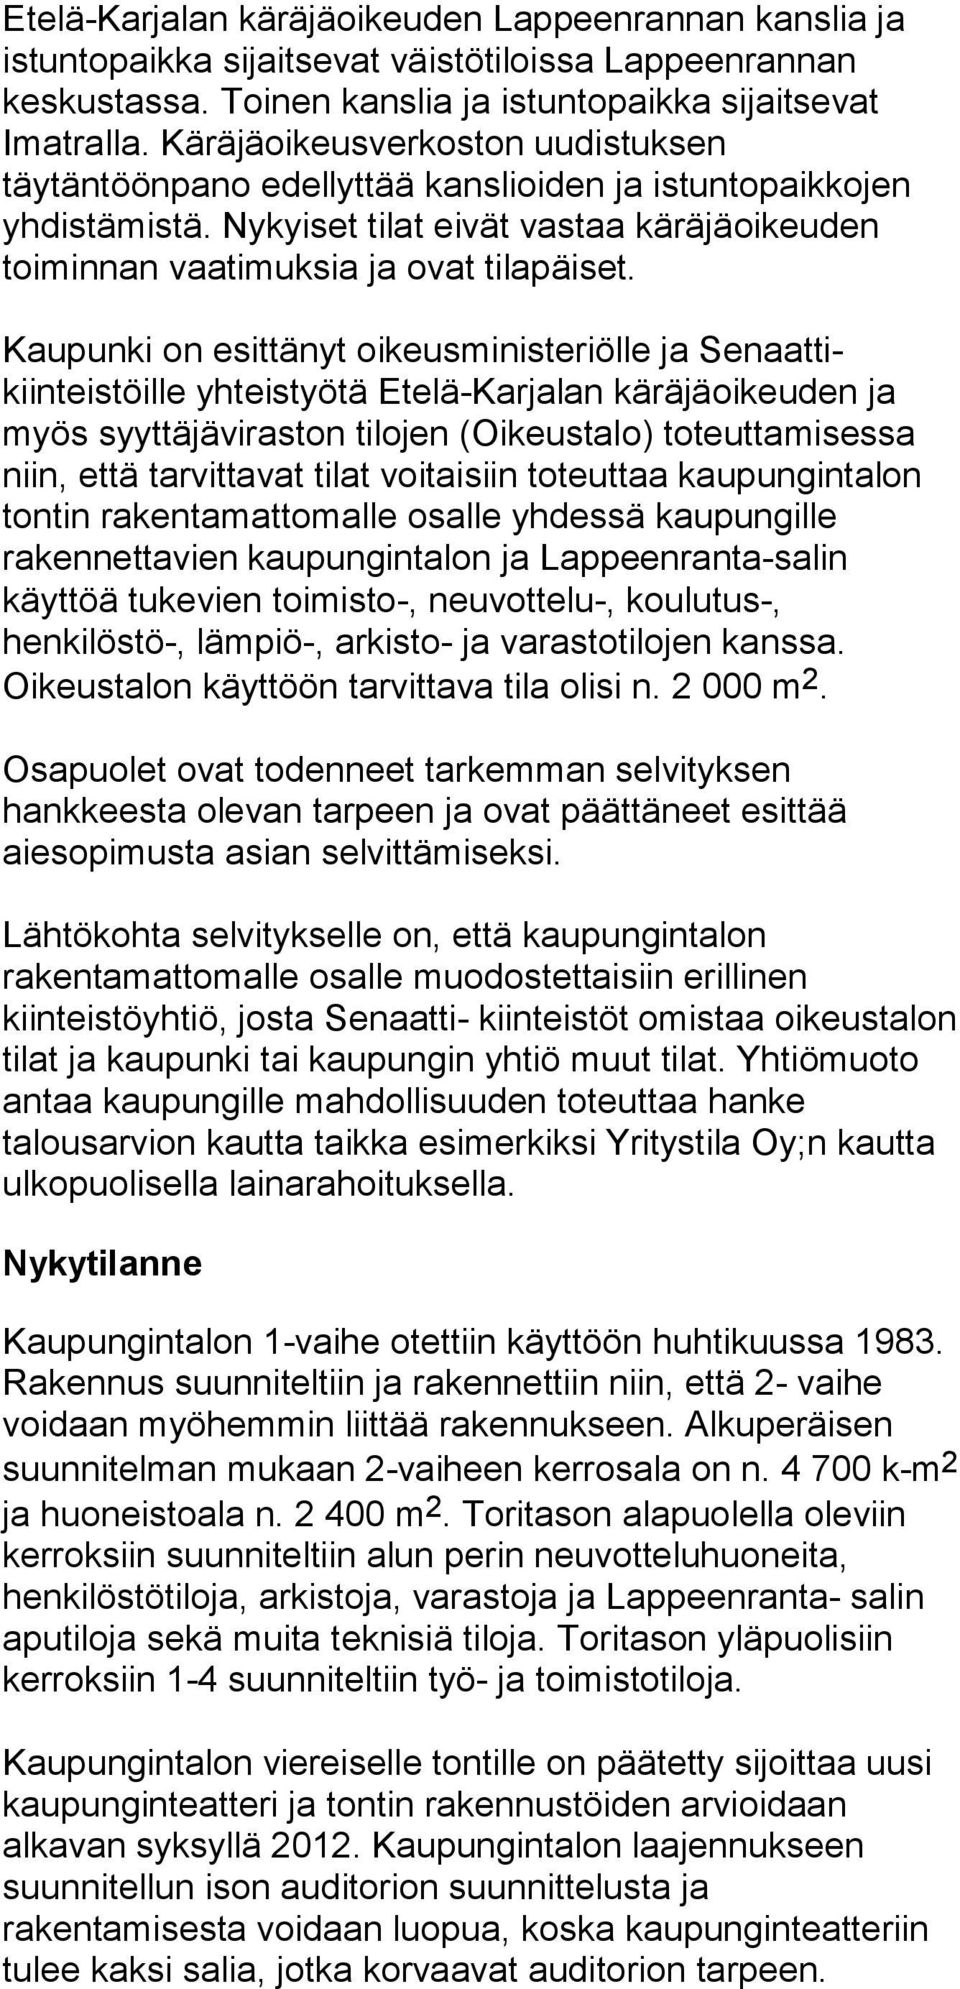 Kaupunki on esittänyt oikeusministeriölle ja Senaattikiinteistöille yhteistyötä Etelä-Karjalan käräjäoikeuden ja myös syyttäjäviraston tilojen (Oikeustalo) toteuttamisessa niin, että tarvittavat